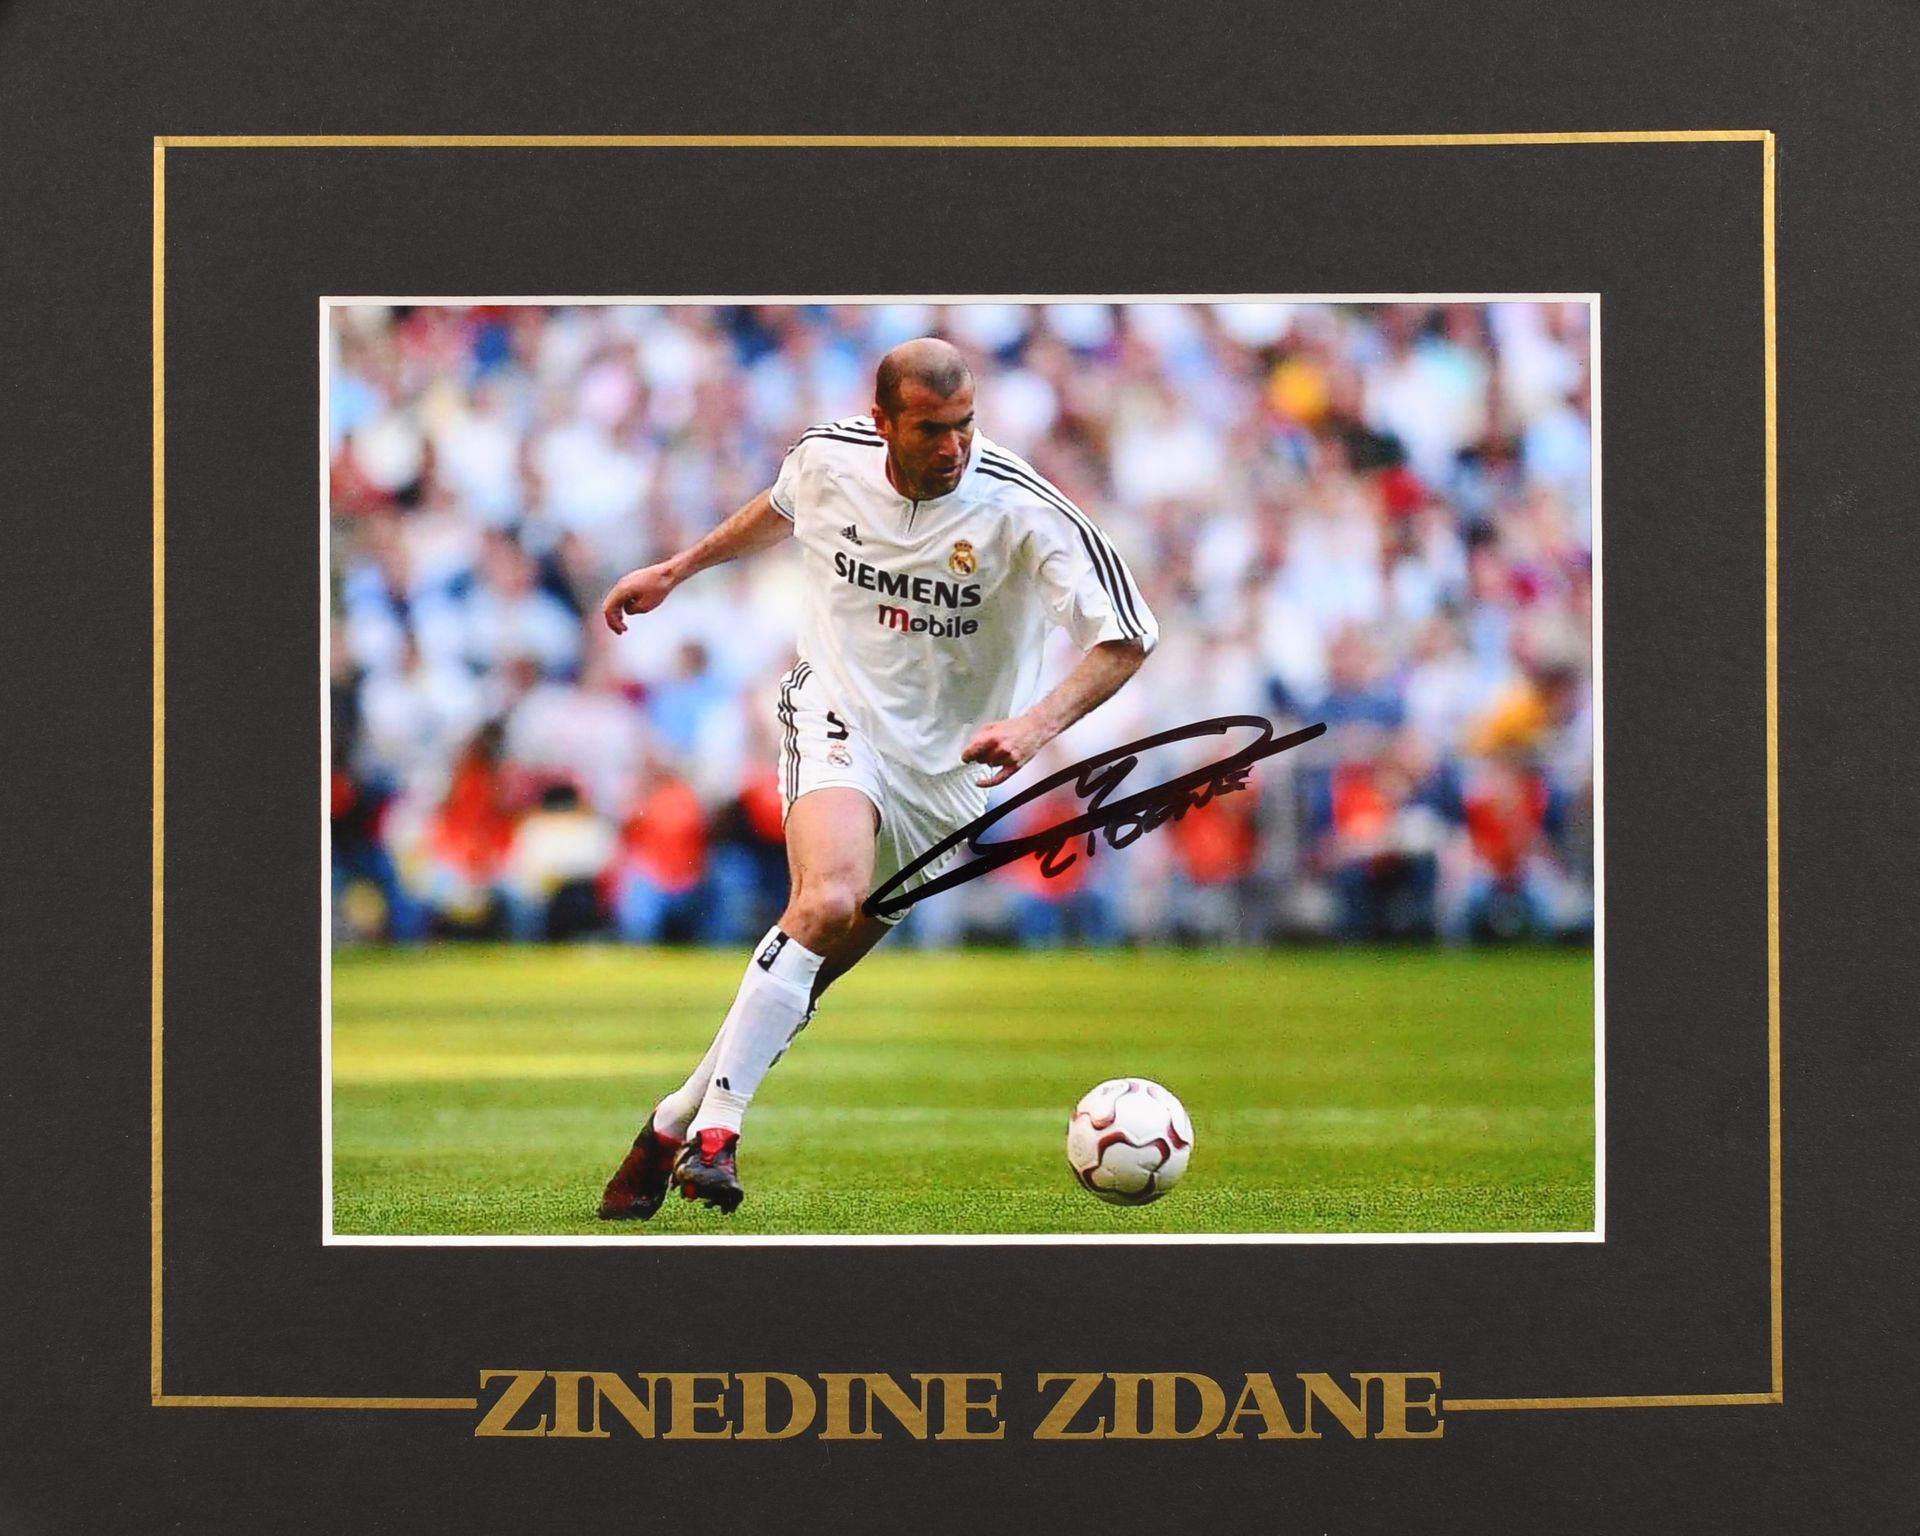 Null 齐内丁-齐达内。穿着皇家马德里球衣的球员的签名照片。彩色照片。格式为15x20厘米，24x30厘米的框架。